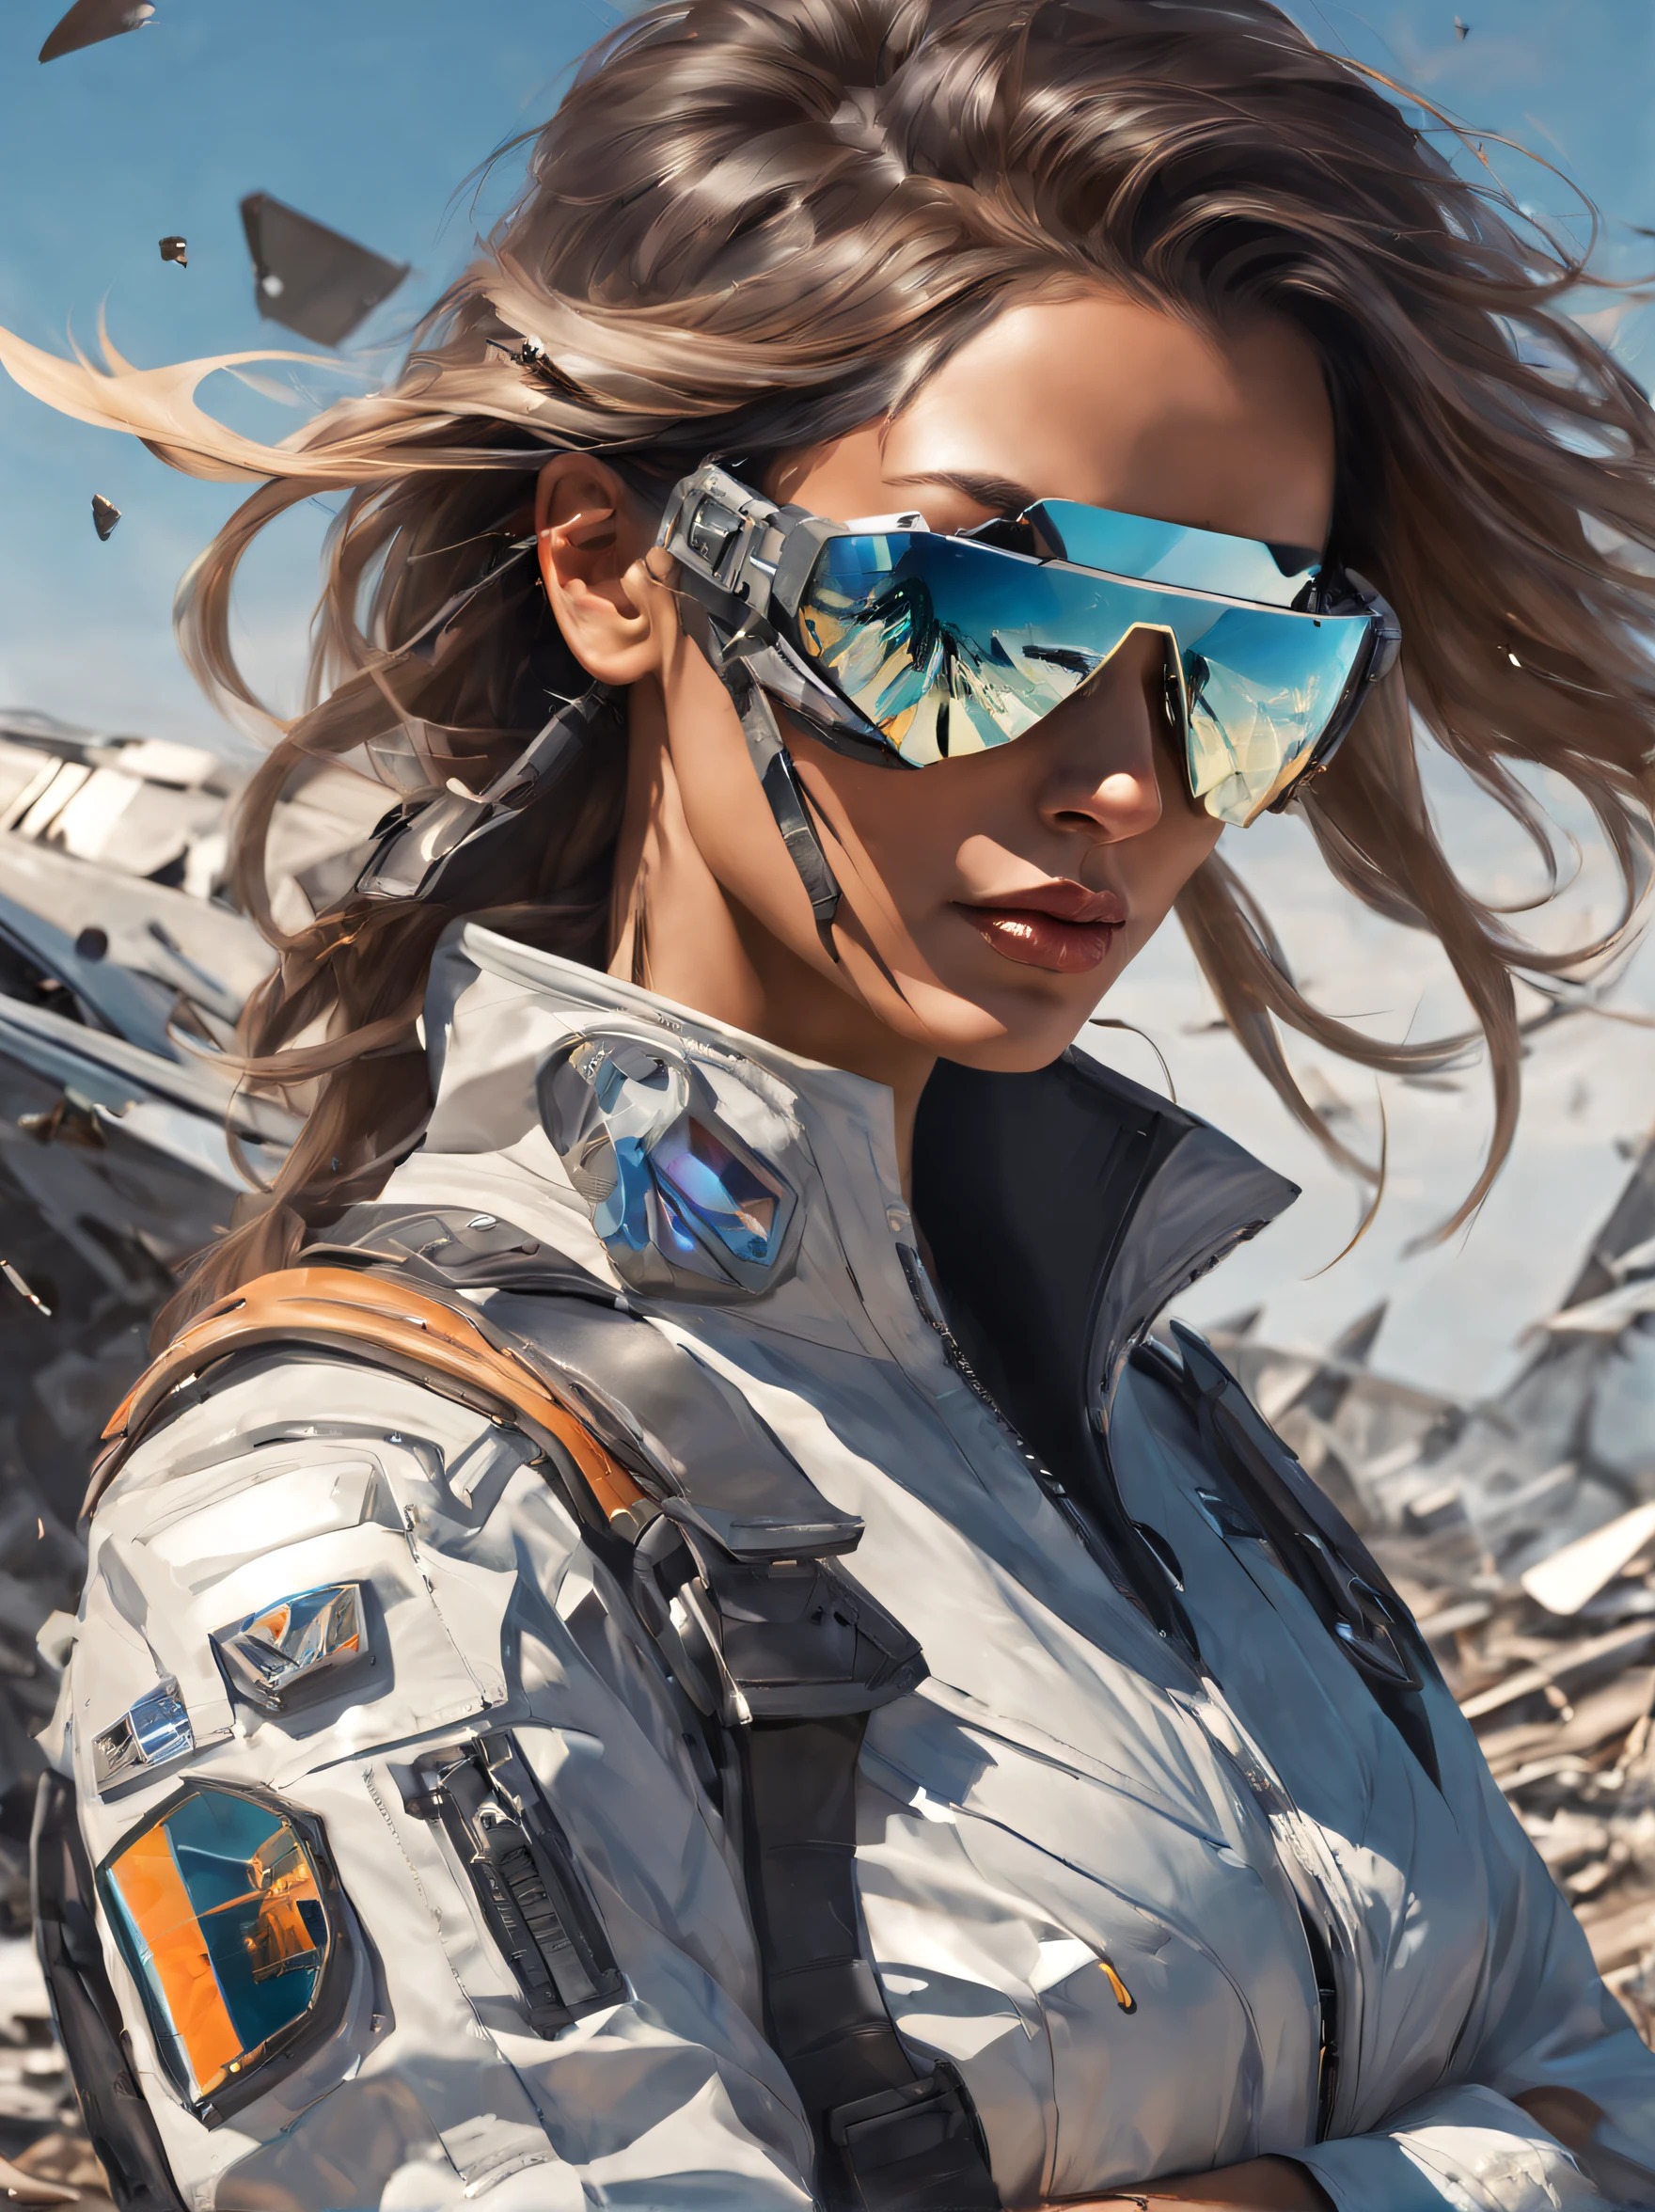 Футуристическая женщина-пилот на улице в разбитых зеркальных солнцезащитных очках, отражающих обломки его самолета — ar 2.:3 --в 4